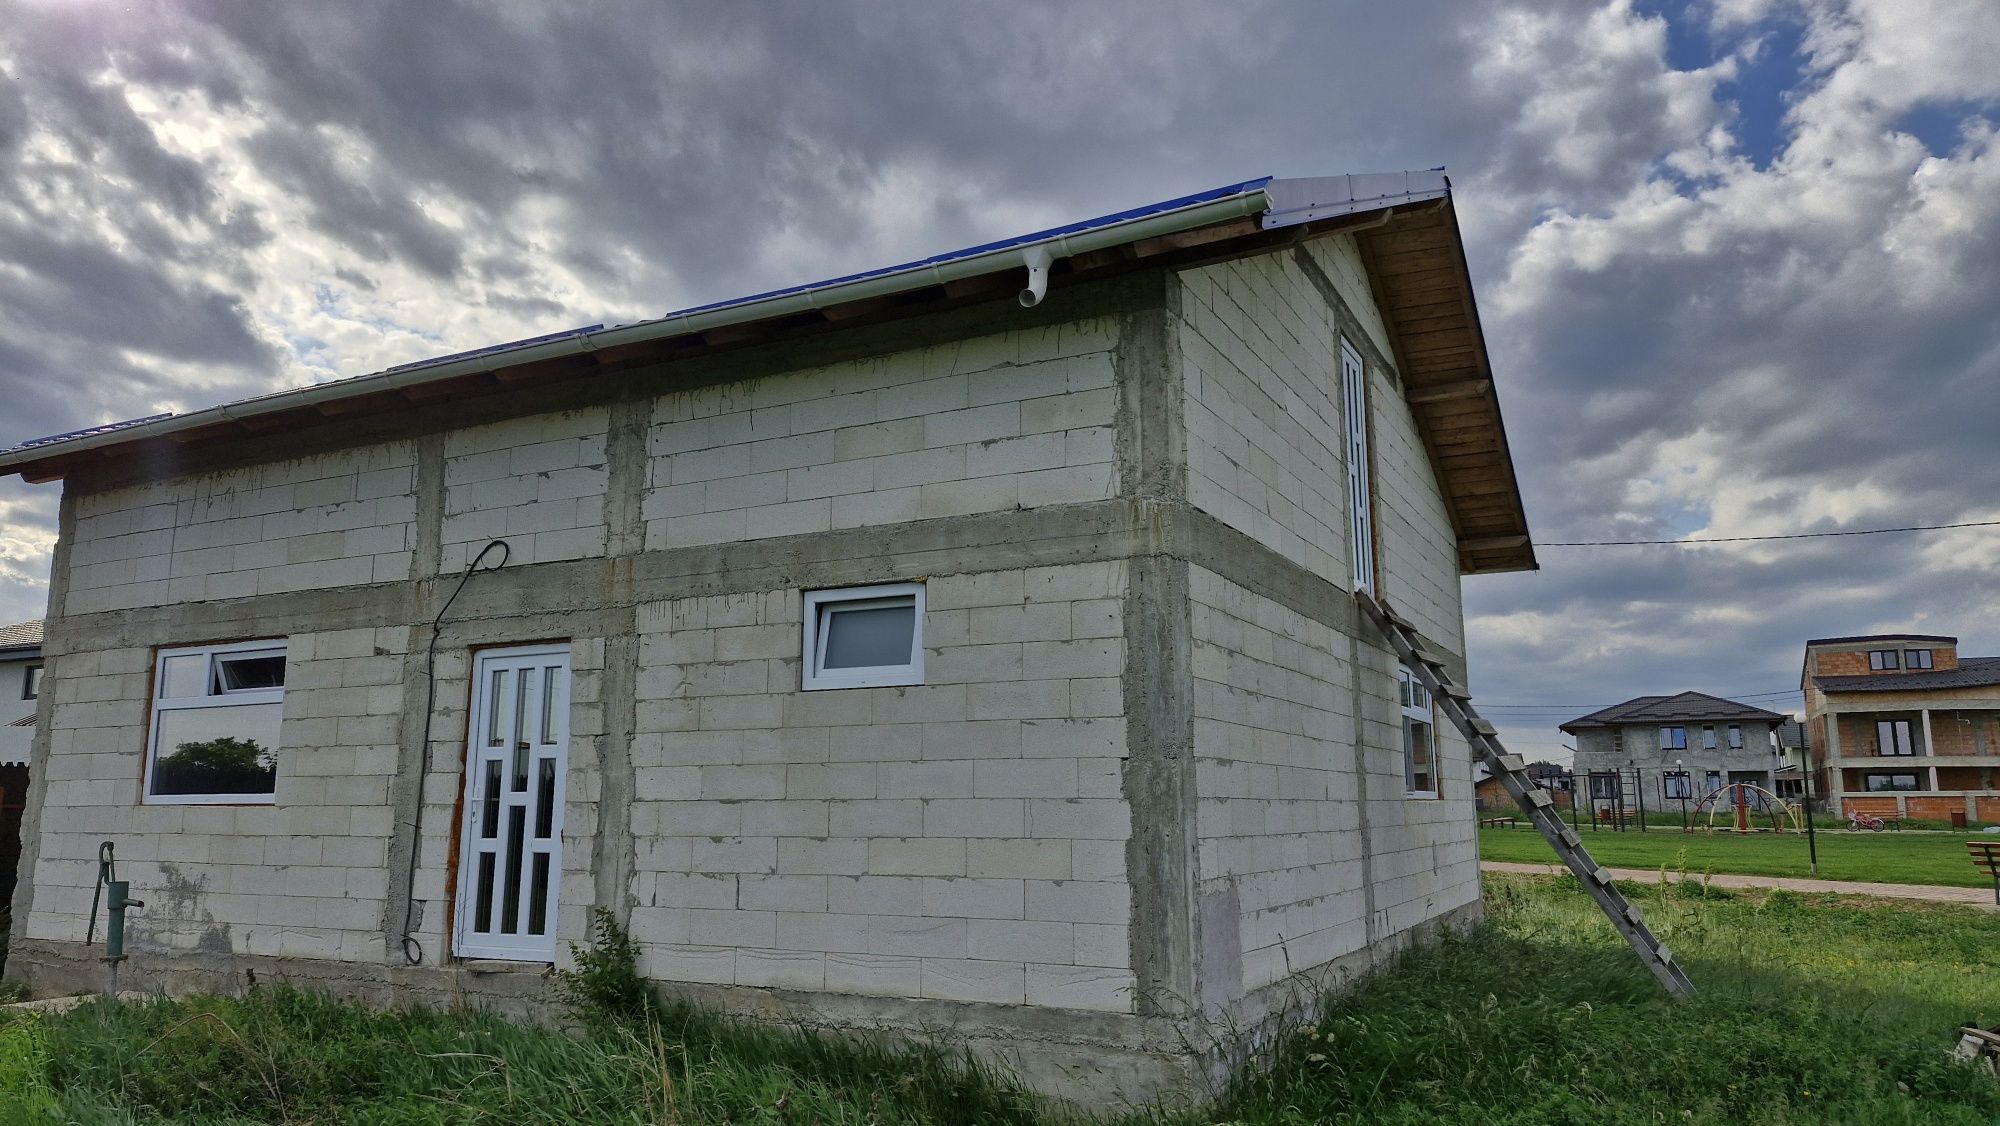 Casa de vanzare in Targsoru Vechi Prahova la 10 km de Ploiesti